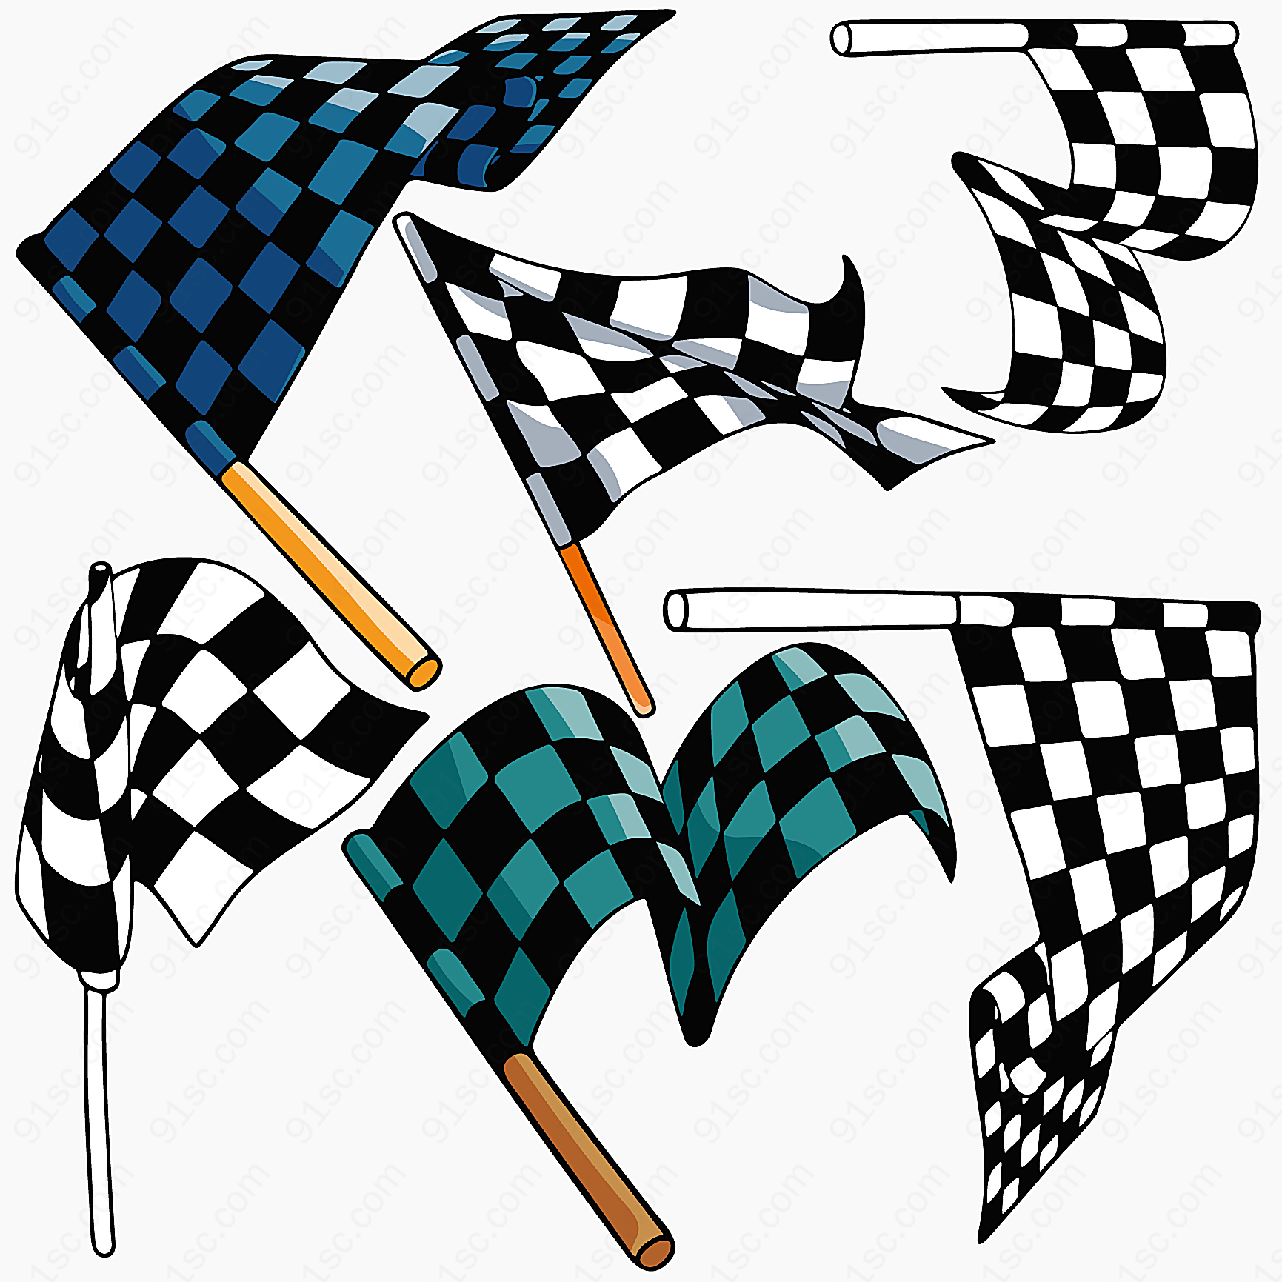 f1赛车旗帜与奖杯矢量旗帜图形